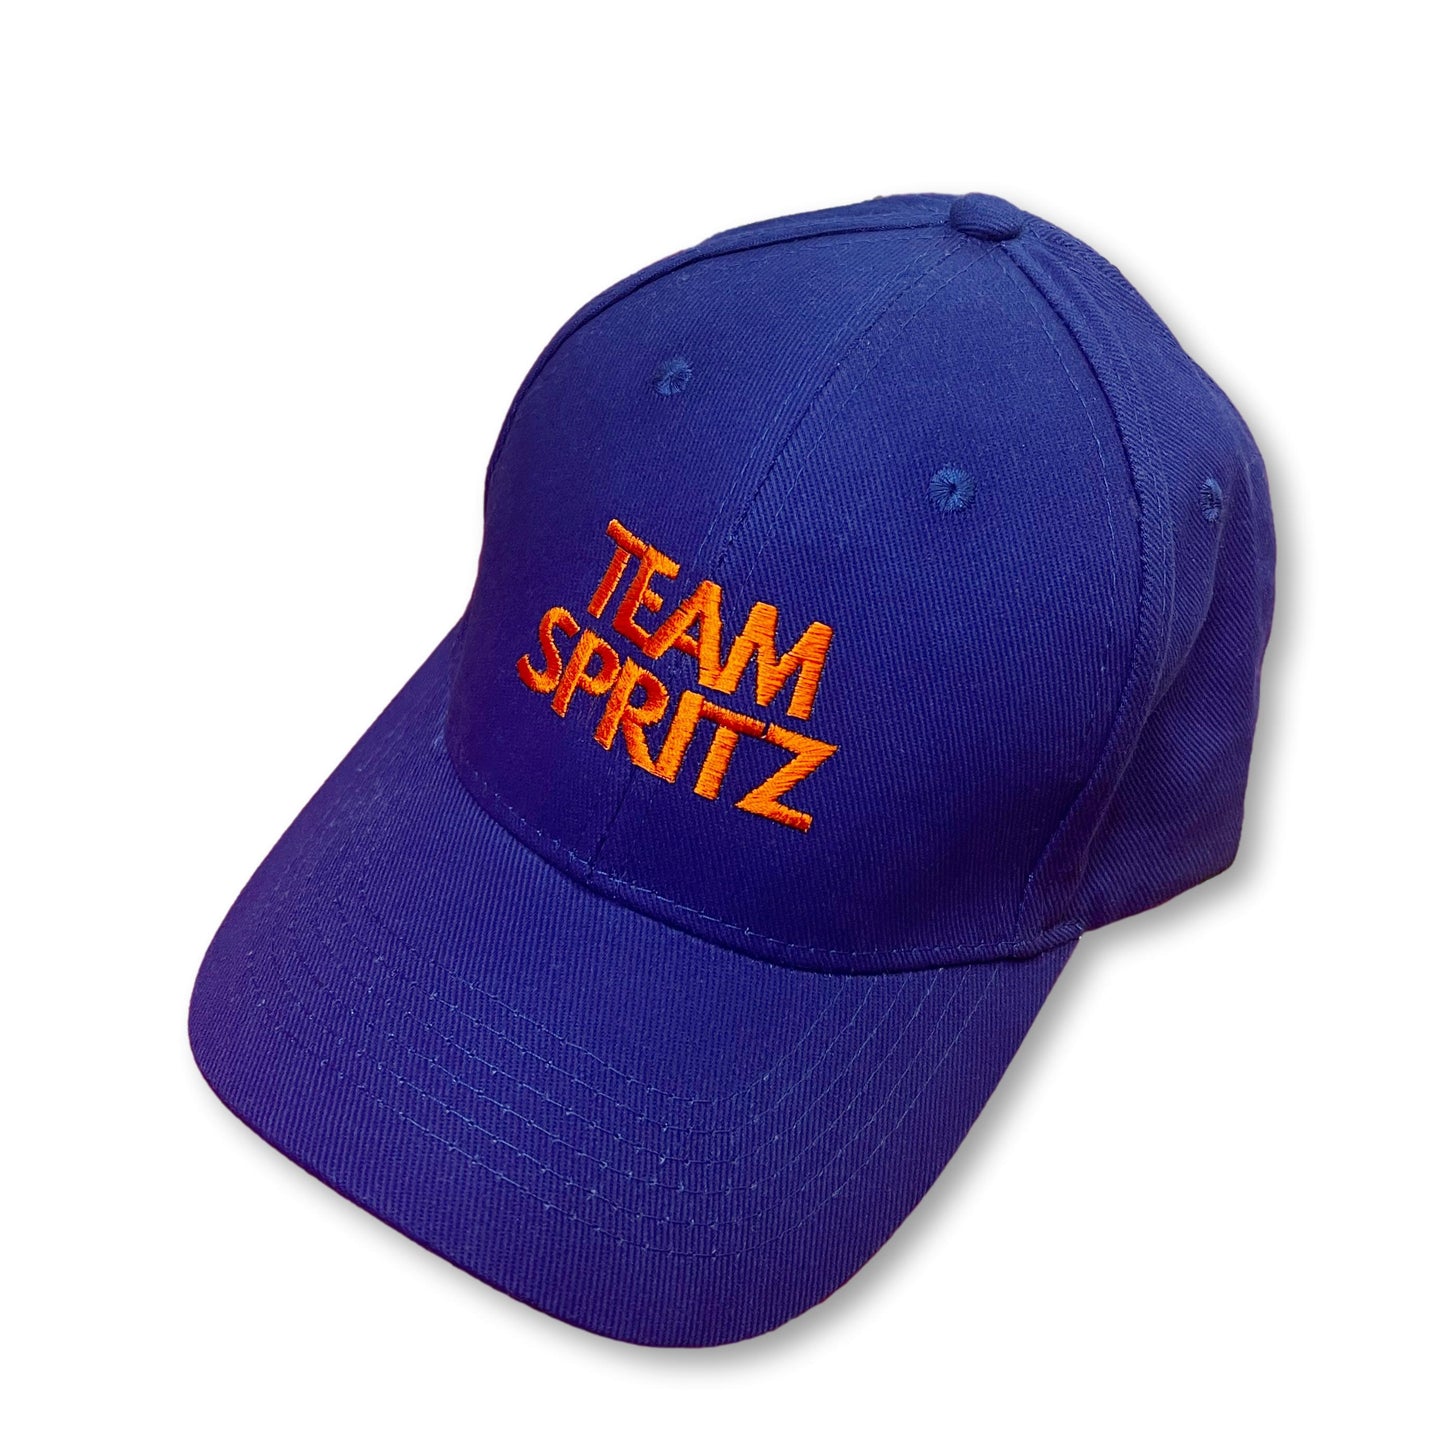 Team Spritz Cotton Baseball Cap